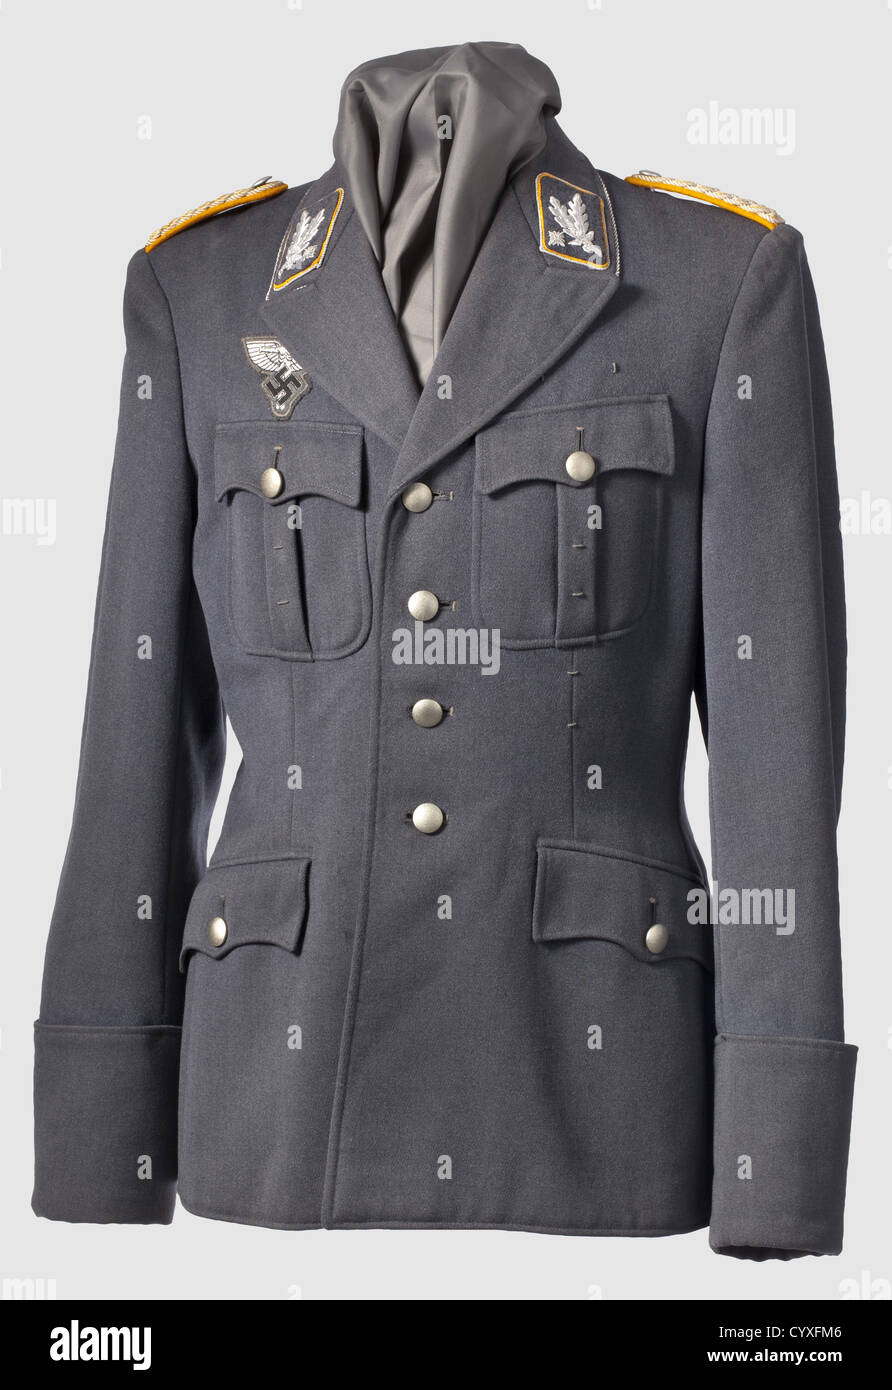 Ein Uniform Mantel um 1941, für einen Brigadeführer in NSFK bläulich-grauer  Gabardine, silberner Kragen Kordel, Brustemblem von NSFK in  Offiziersqualität, die Kragen Patches mit Rang Brigadeführer handbestickt  mit durchgehender gelber Paspel und